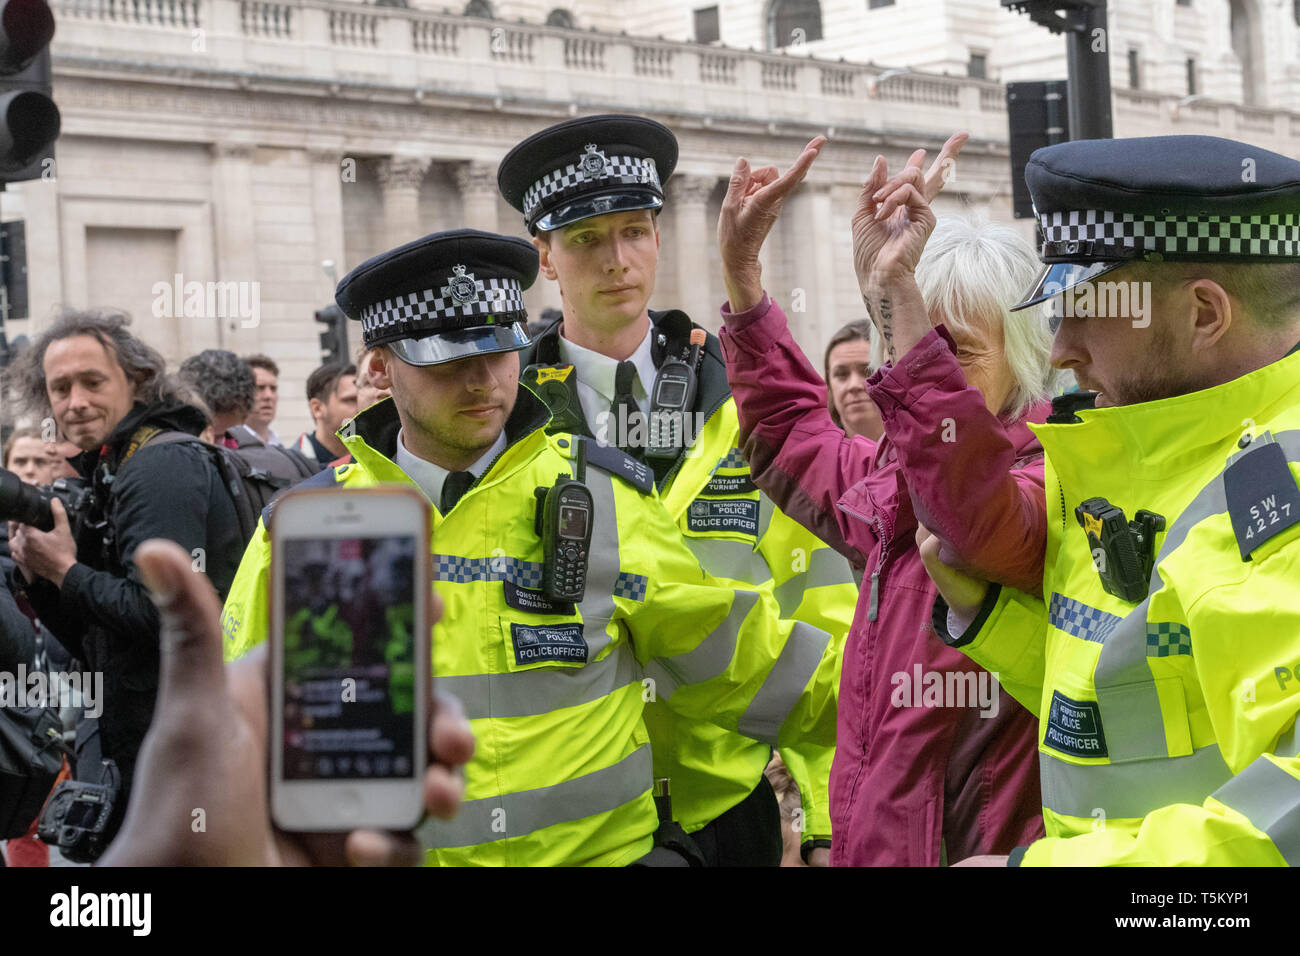 Londres, Royaume-Uni. 25 avr 2019. La police arrête rébellion Extinction protestataires à la jonction de la Banque dans la ville de Londres pour obstruction à l'autoroute Crédit : Ian Davidson/Alamy Live News Banque D'Images